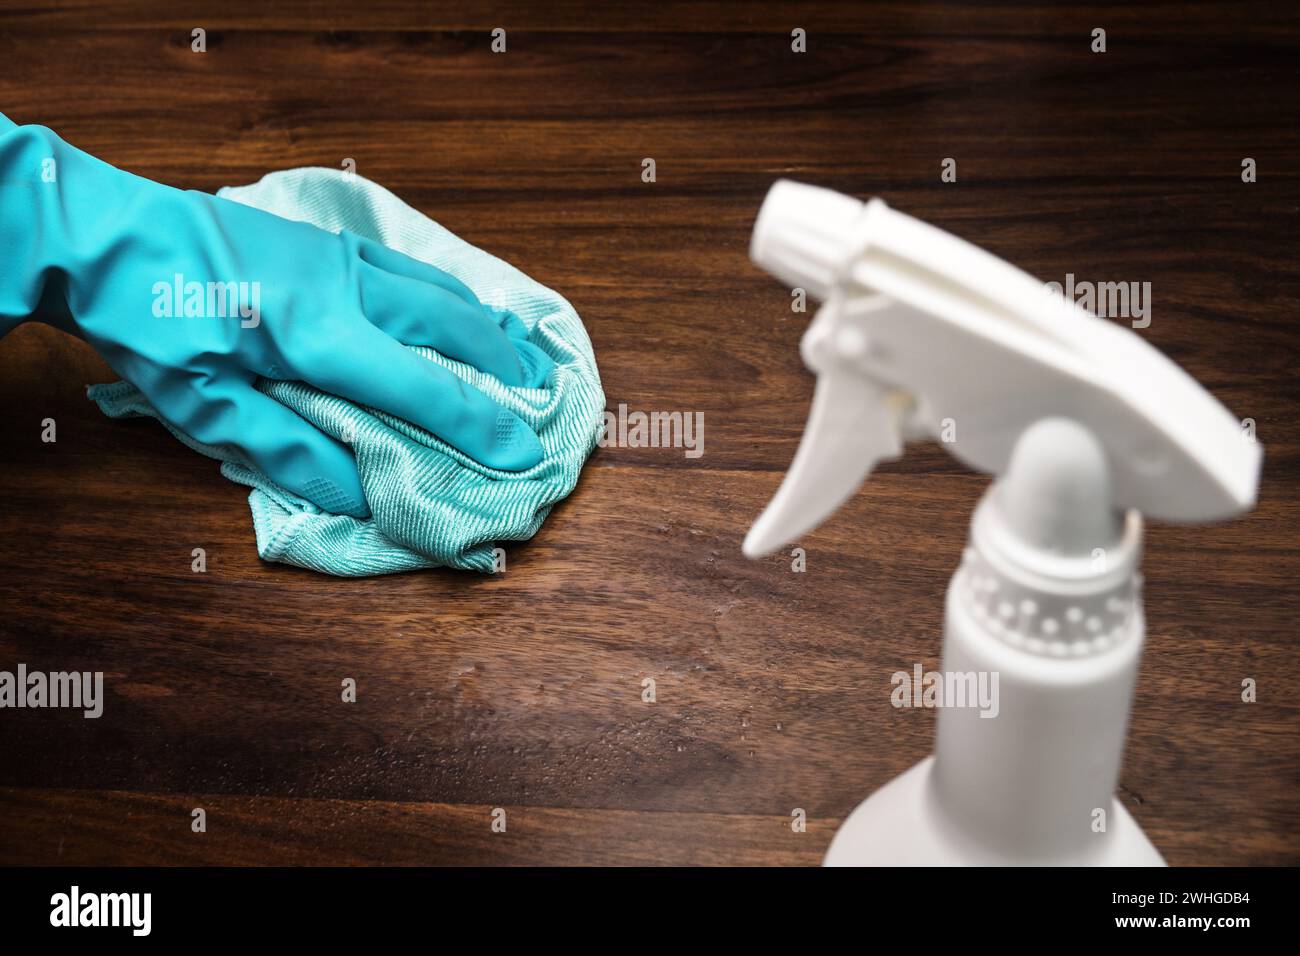 Oberflächendesinfektion gegen Coronavirus-Ausbreitung, Hand mit blauem Gummihandschuh reinigen einen dunklen Holztisch, weiße Flasche mit Stockfoto